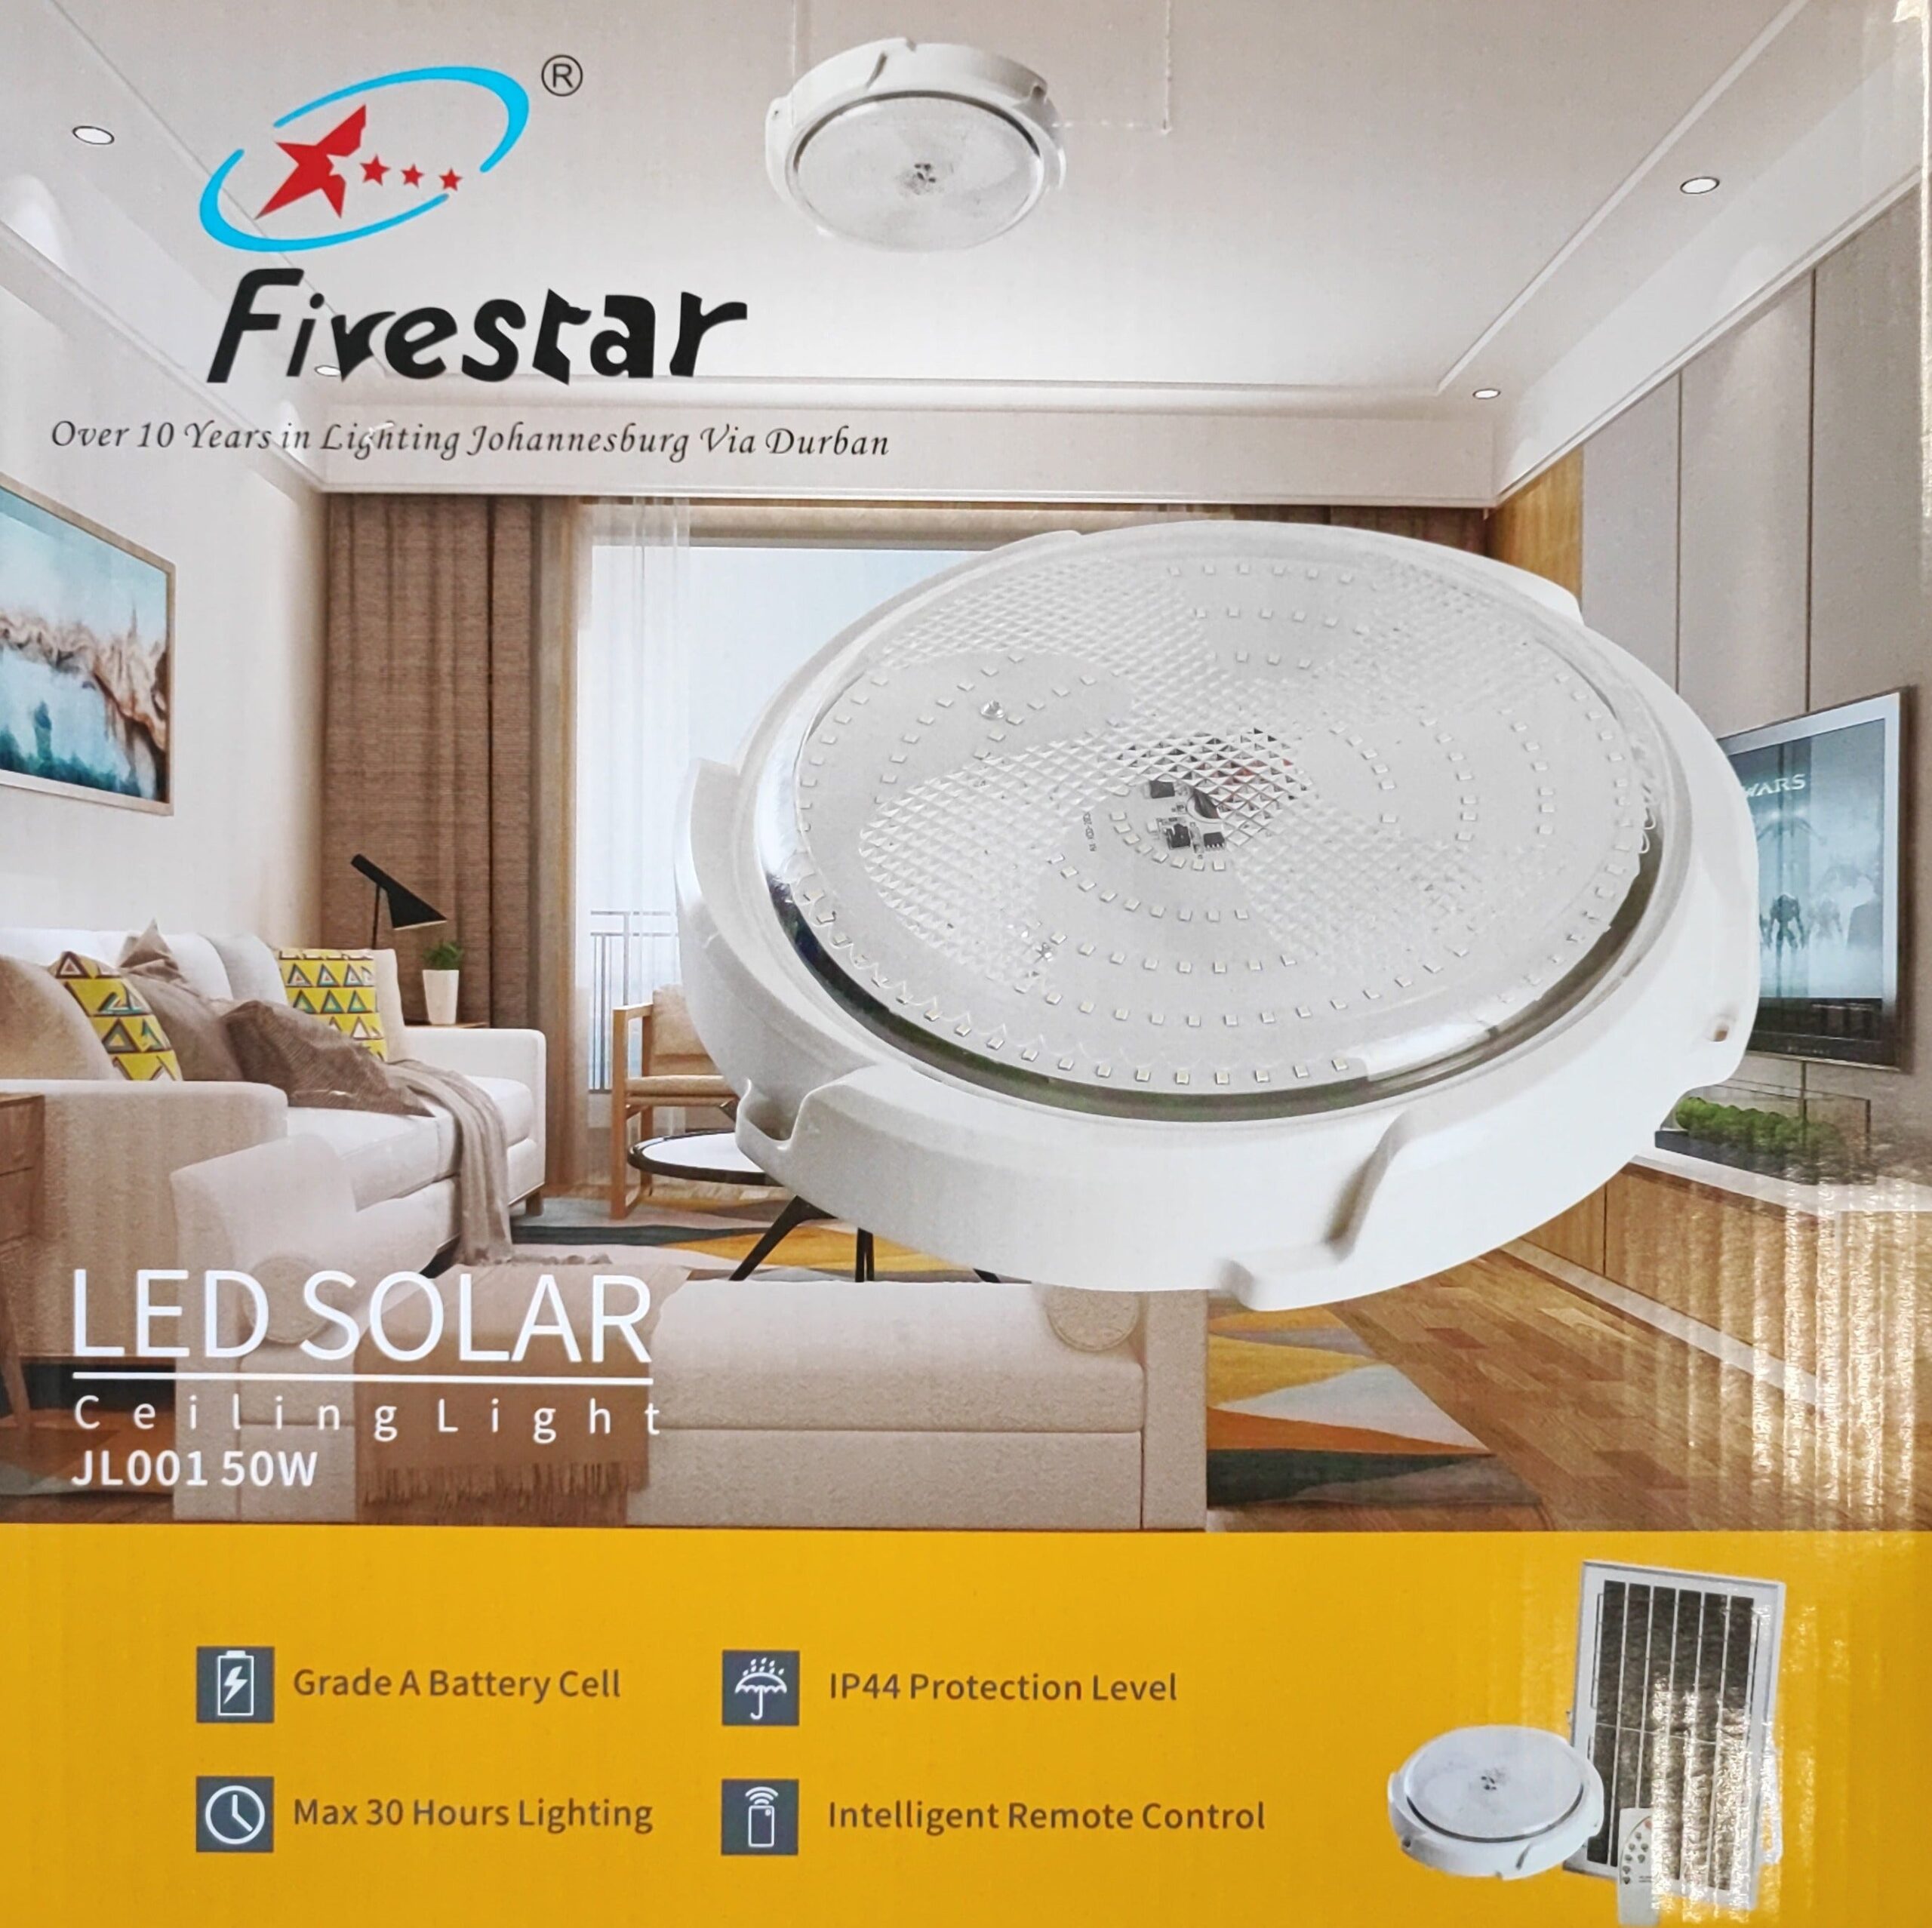 Fivestar 50W LED Solar Ceiling Light